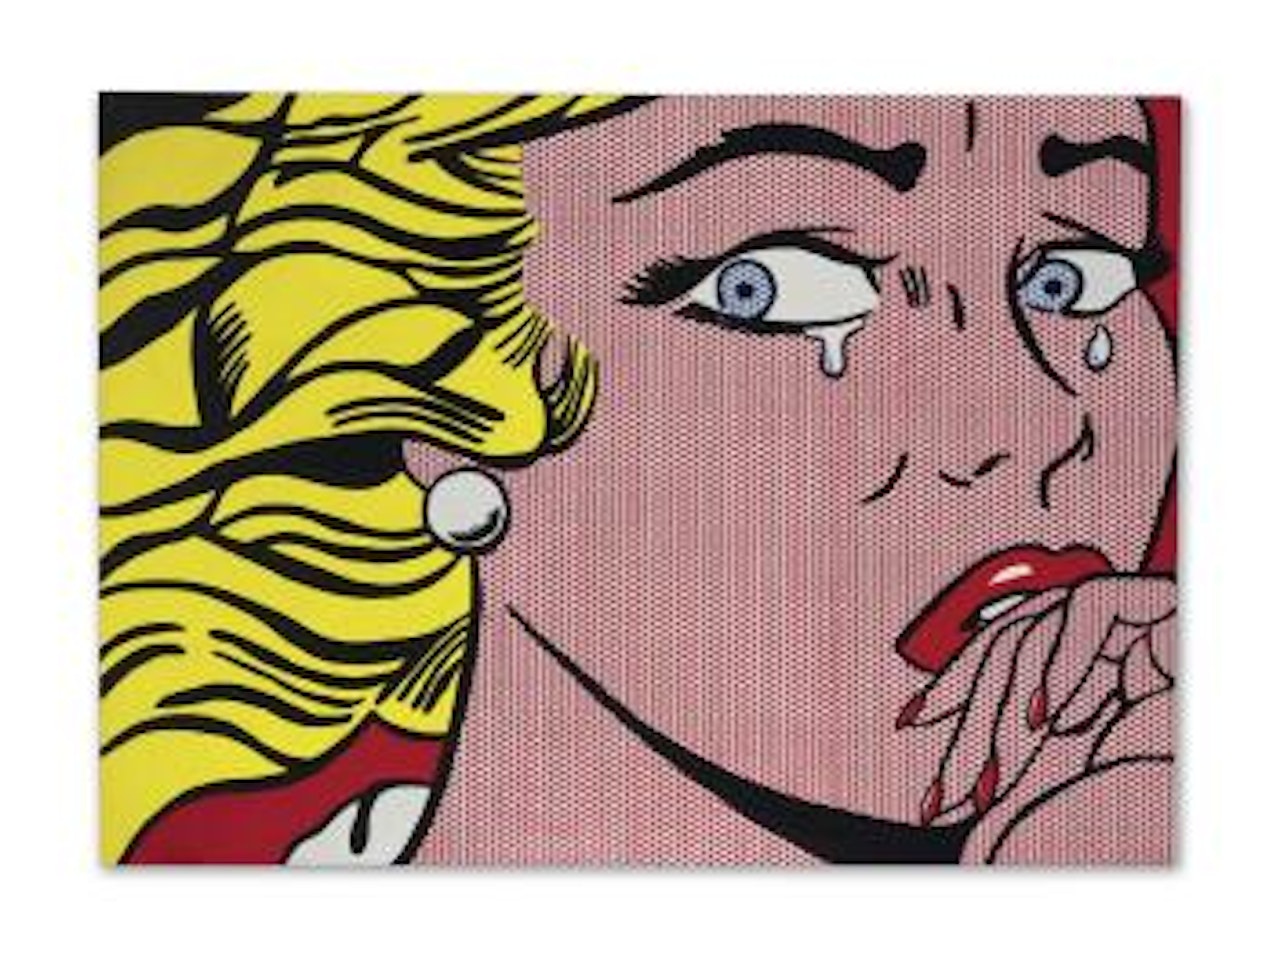 Lichtenstein, Frighten Girl by Elaine Sturtevant